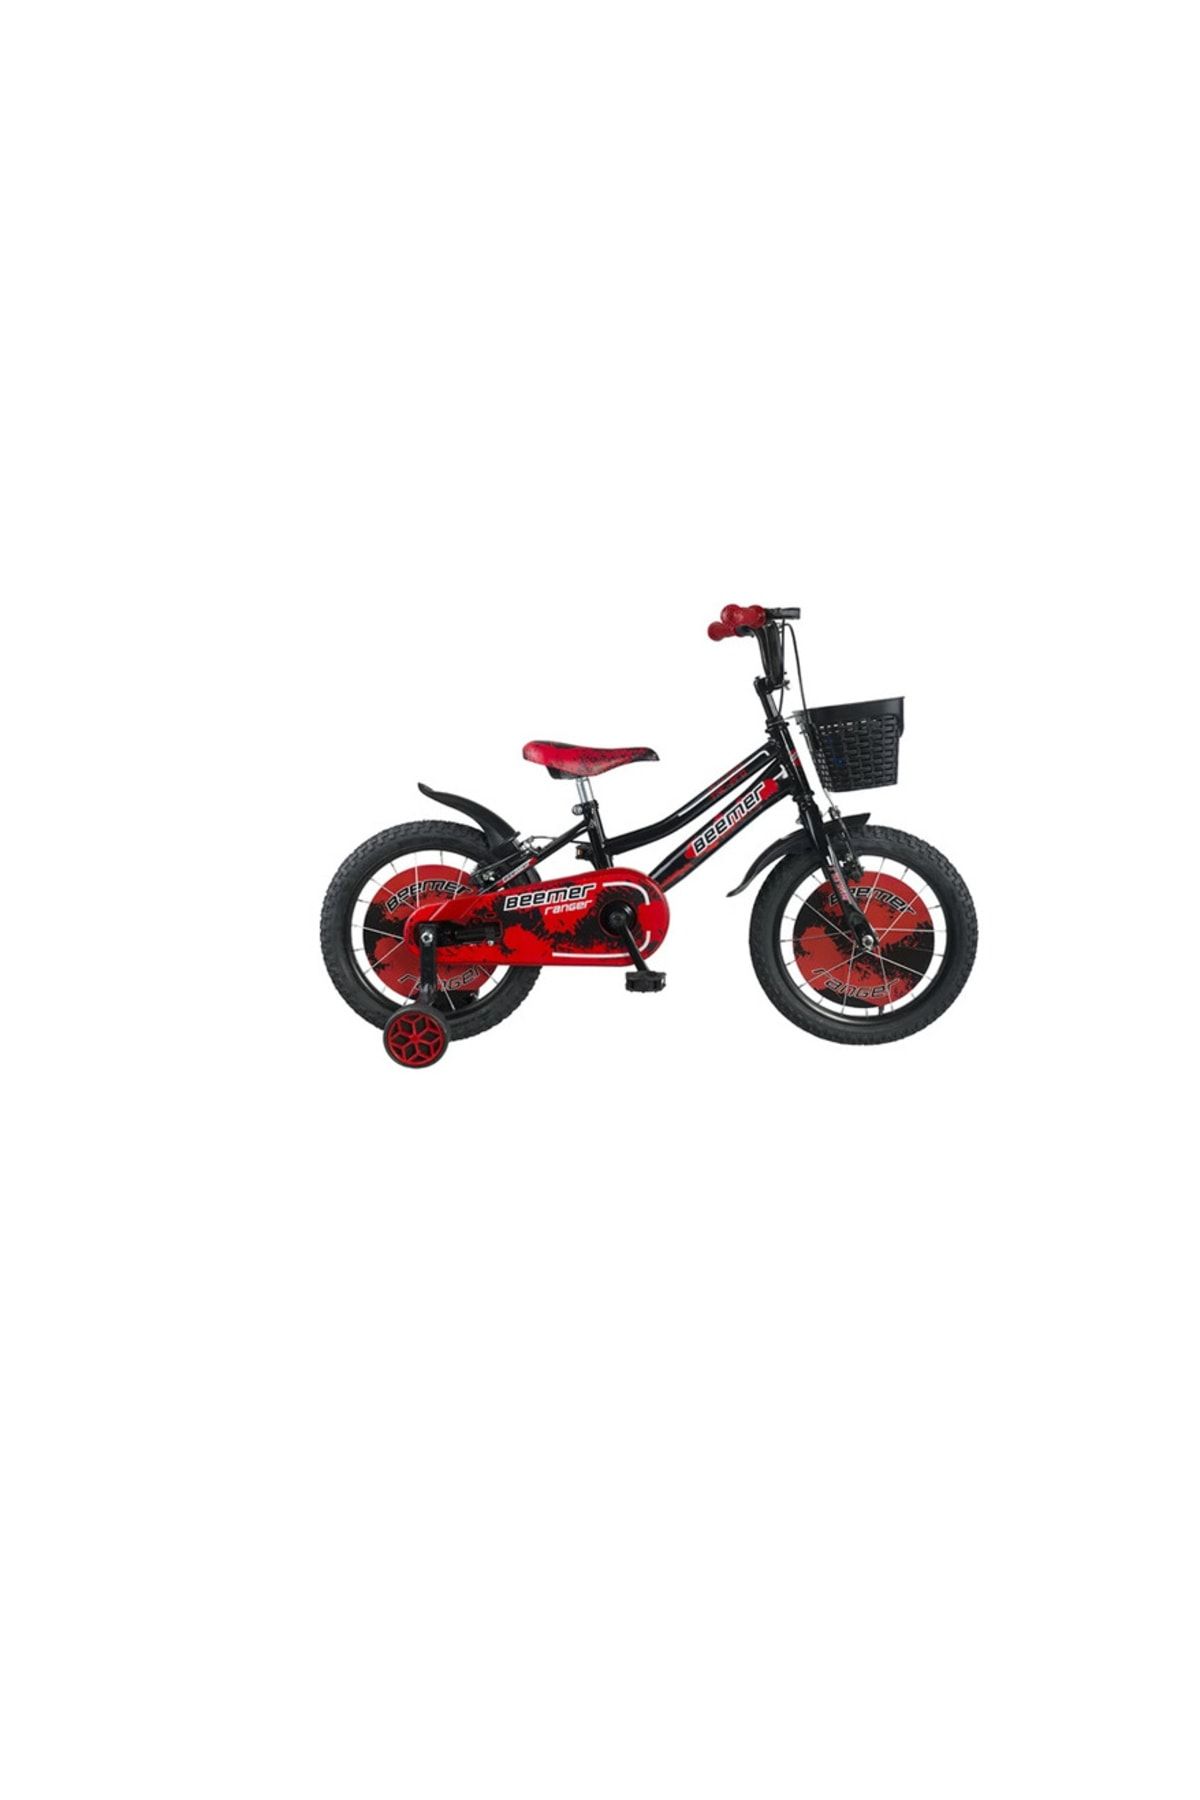 Tunca Çocuk Bisikleti Kırmızı Dört Tekerlekli 16 Jant Sepetli Çocuk Bisikleti Bisiklet